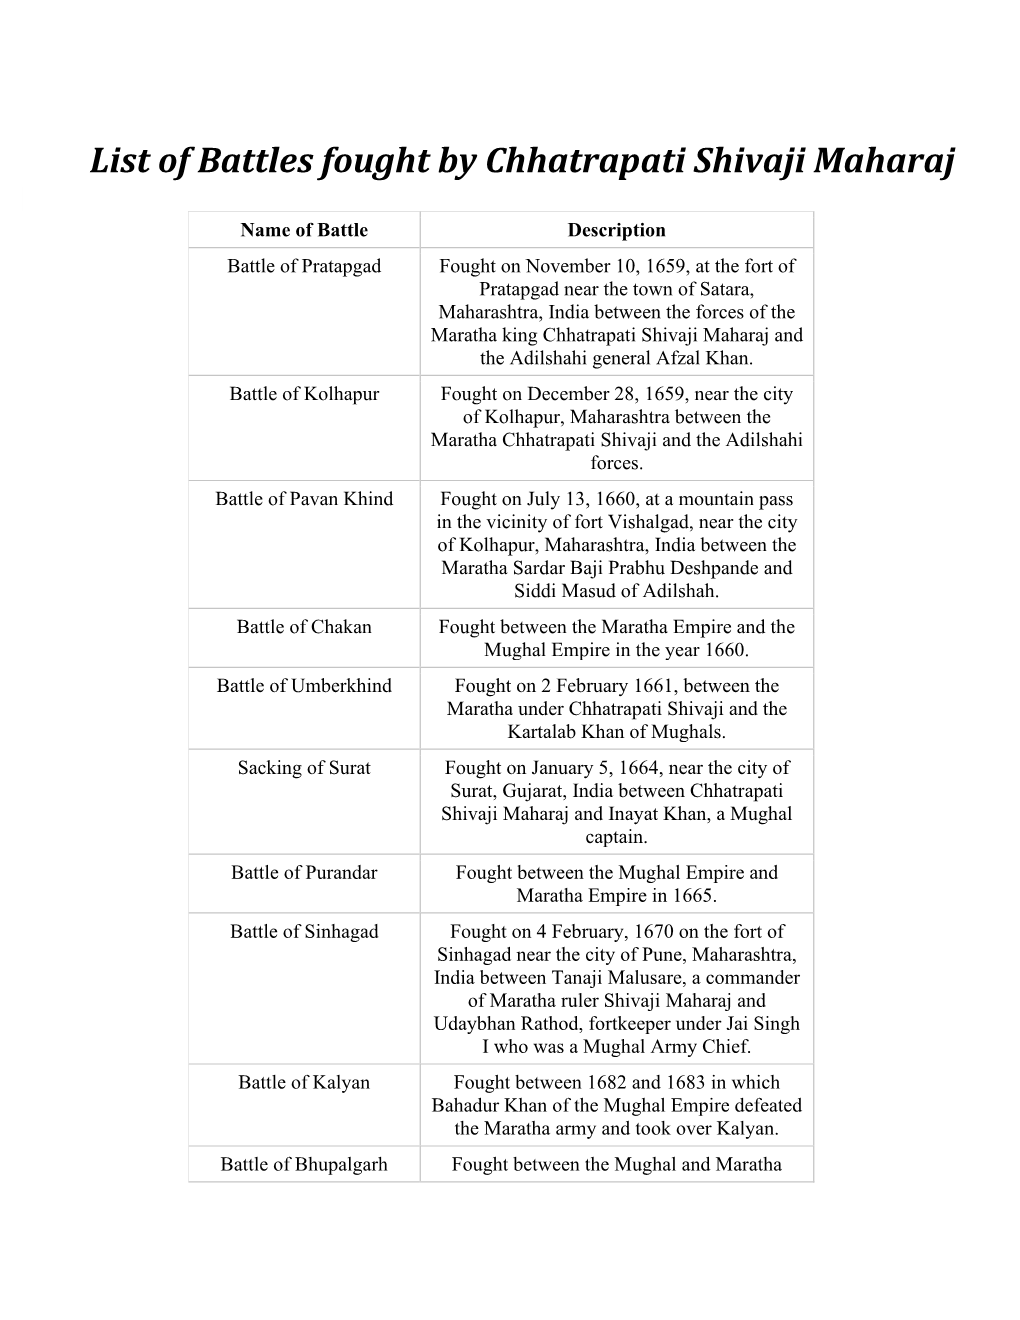 List of Battles Fought by Chhatrapati Shivaji Maharaj